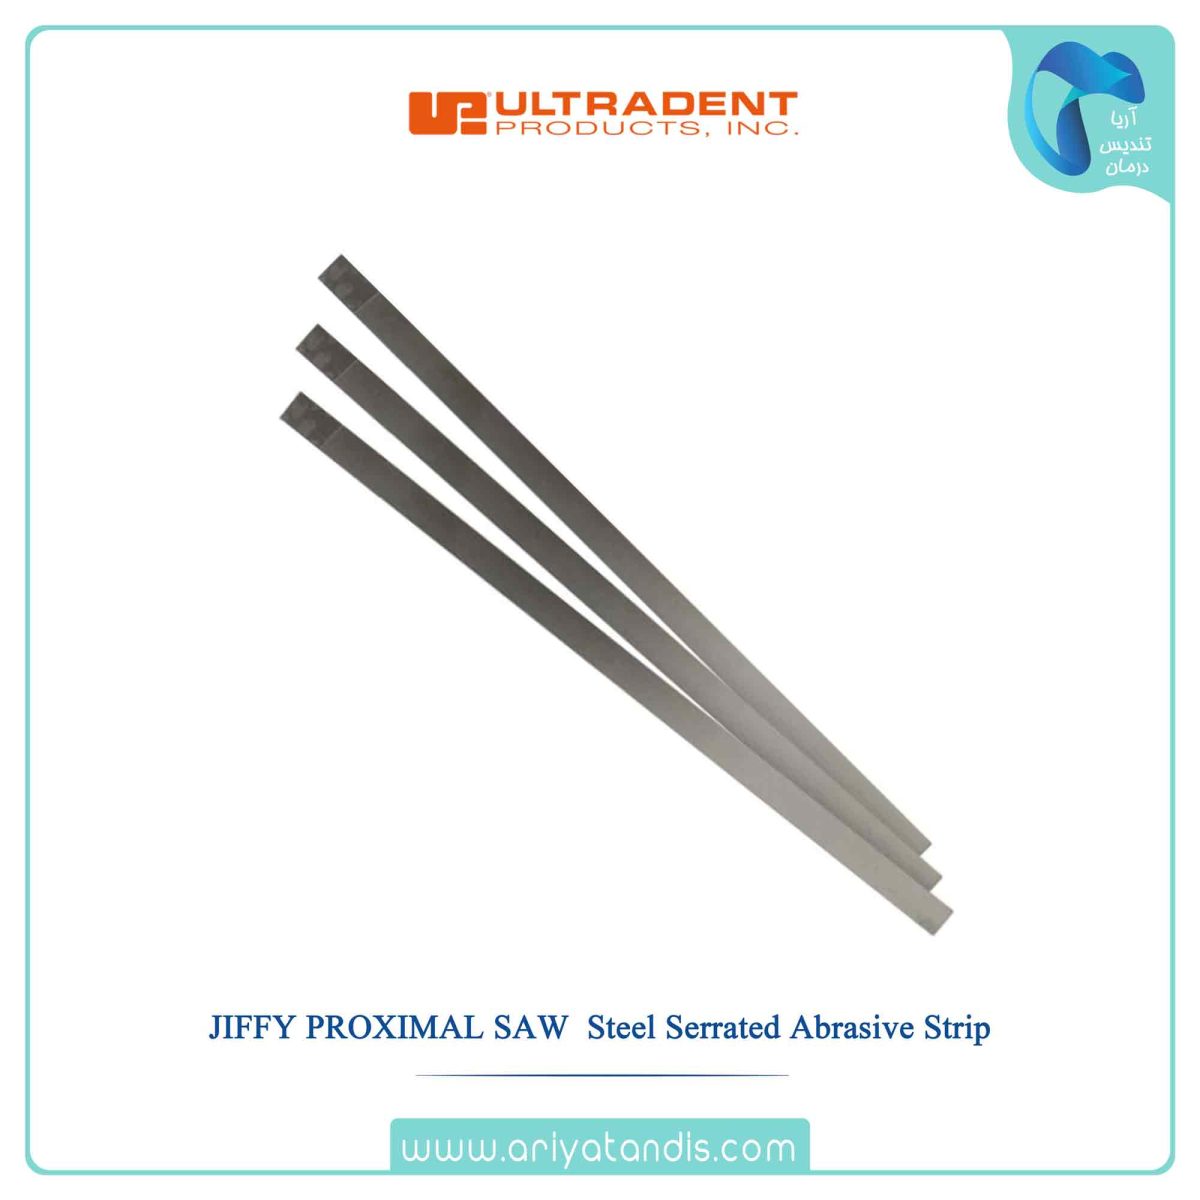 قیمت نوار پرداخت استیل الترادنت، JIFFY PROXIMAL SAW ULTRADENT Steel Serrated Abrasive Strip